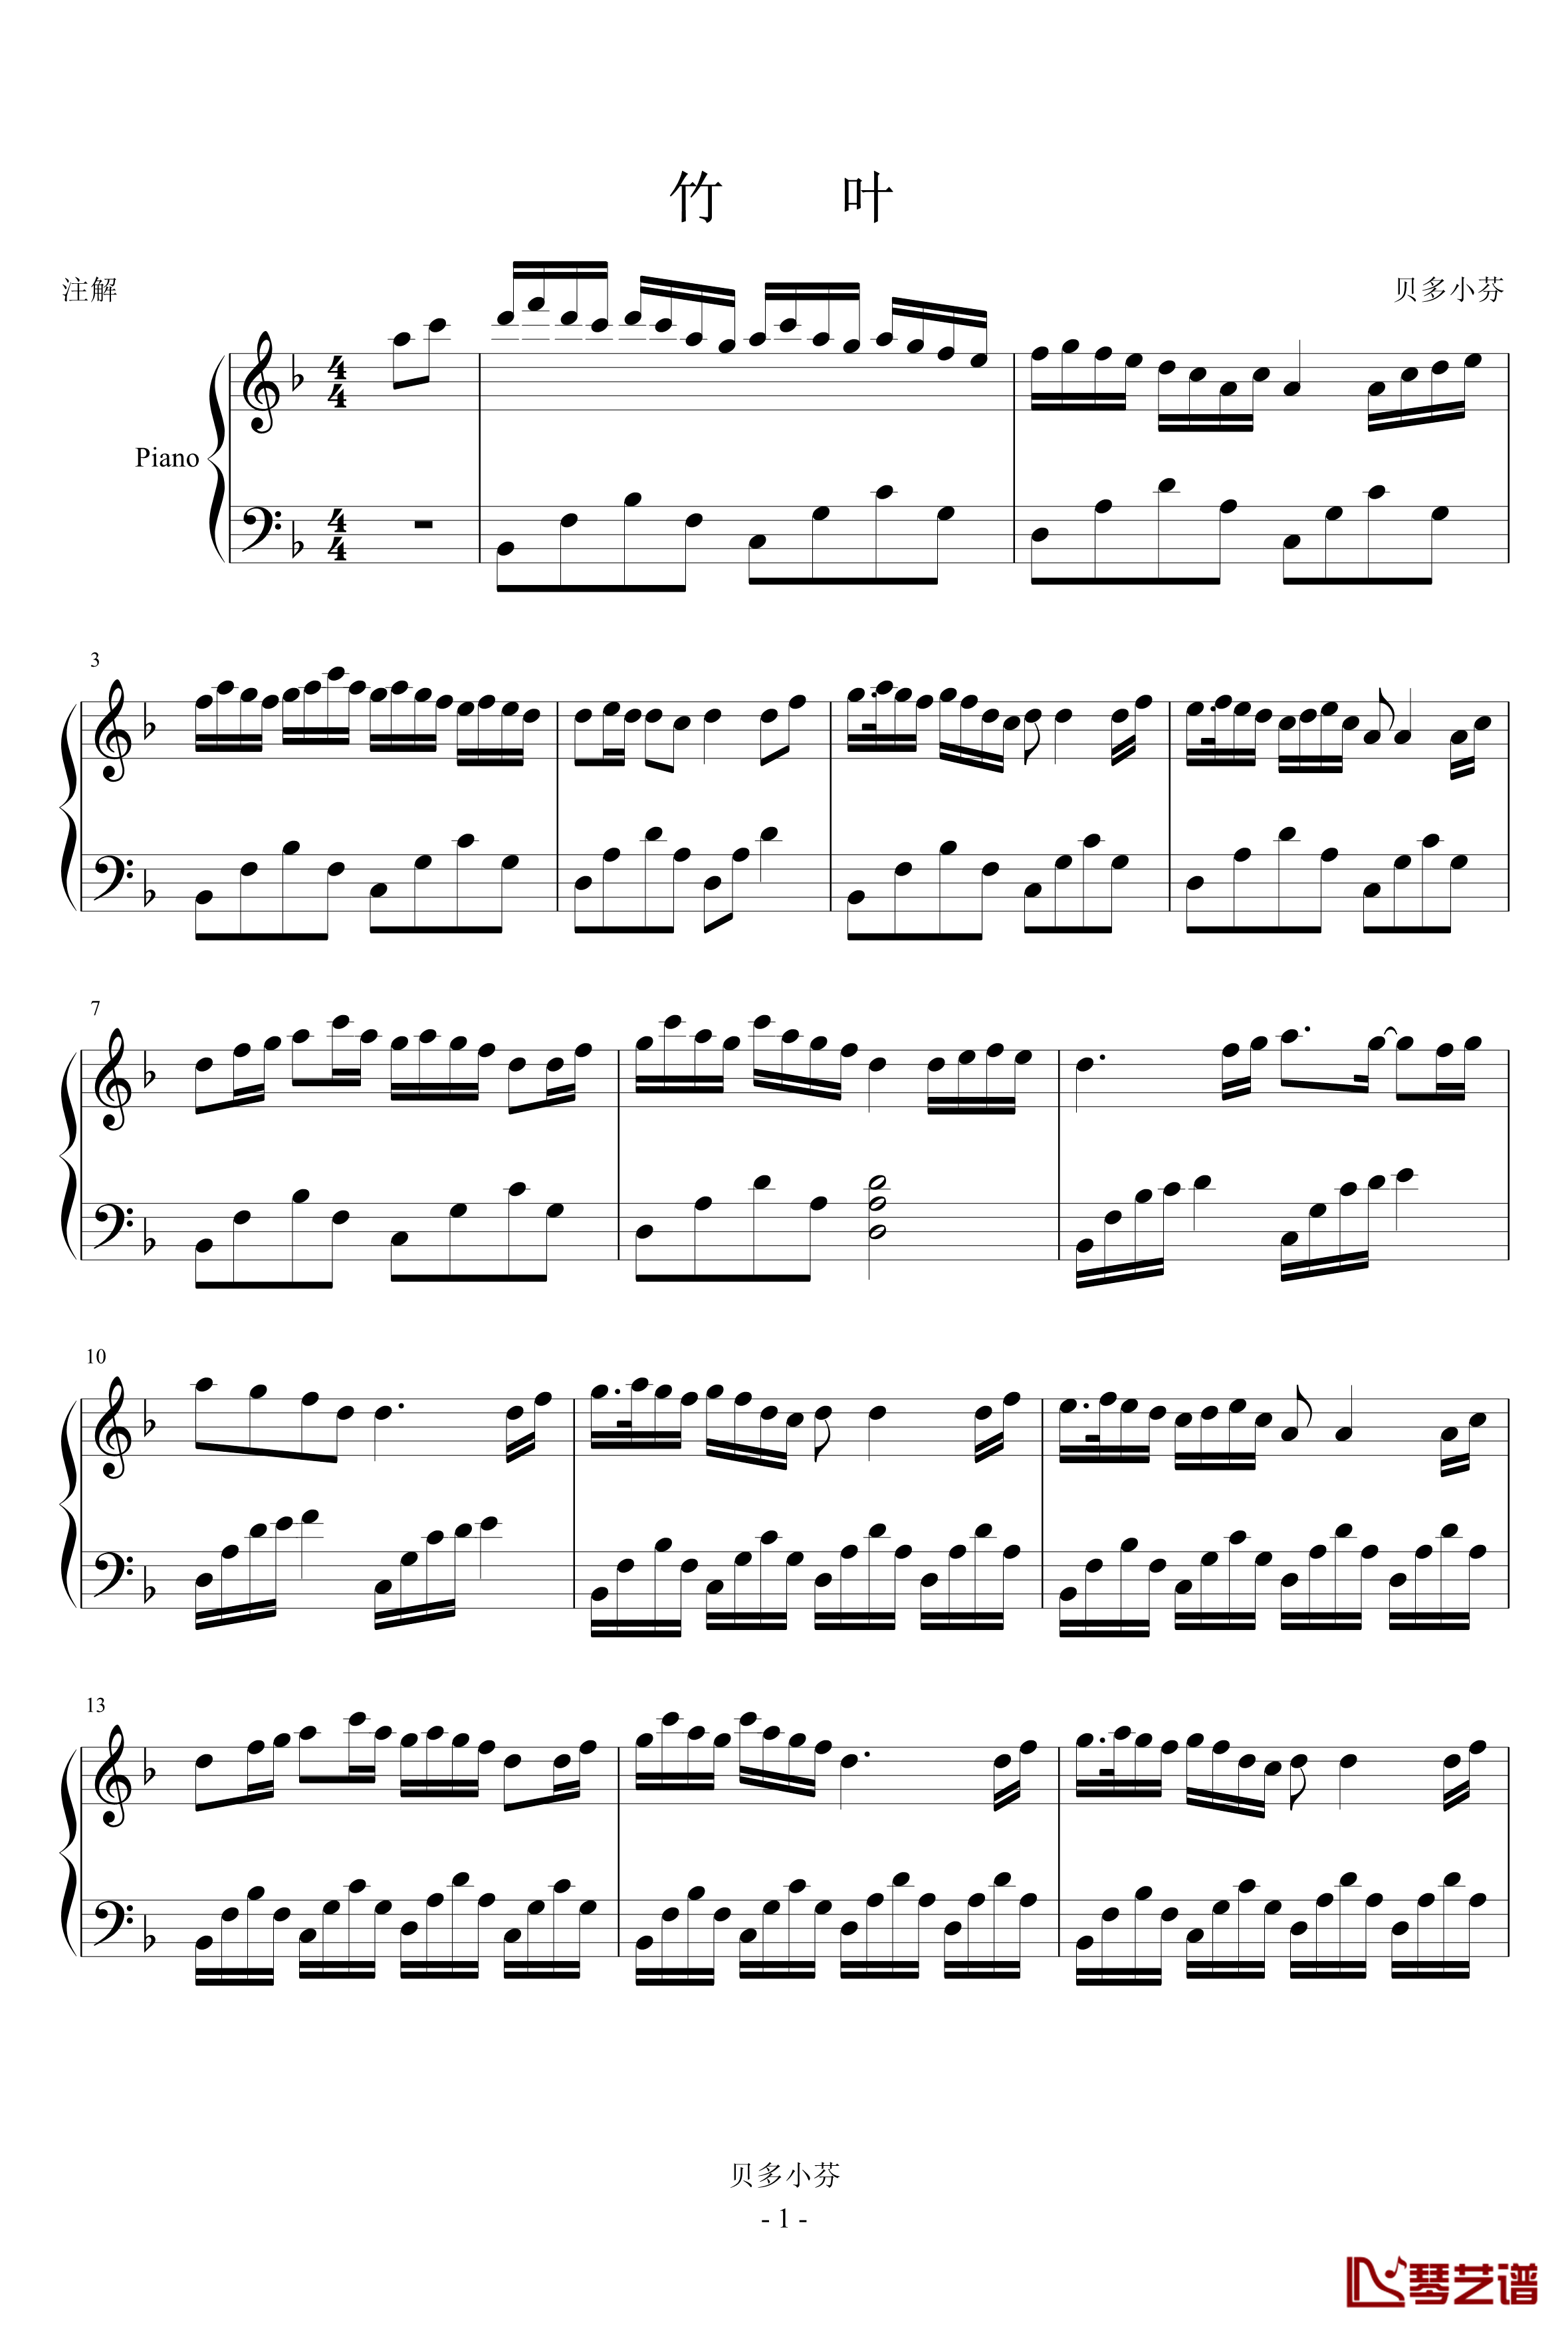 竹叶钢琴谱-贝多小芬1